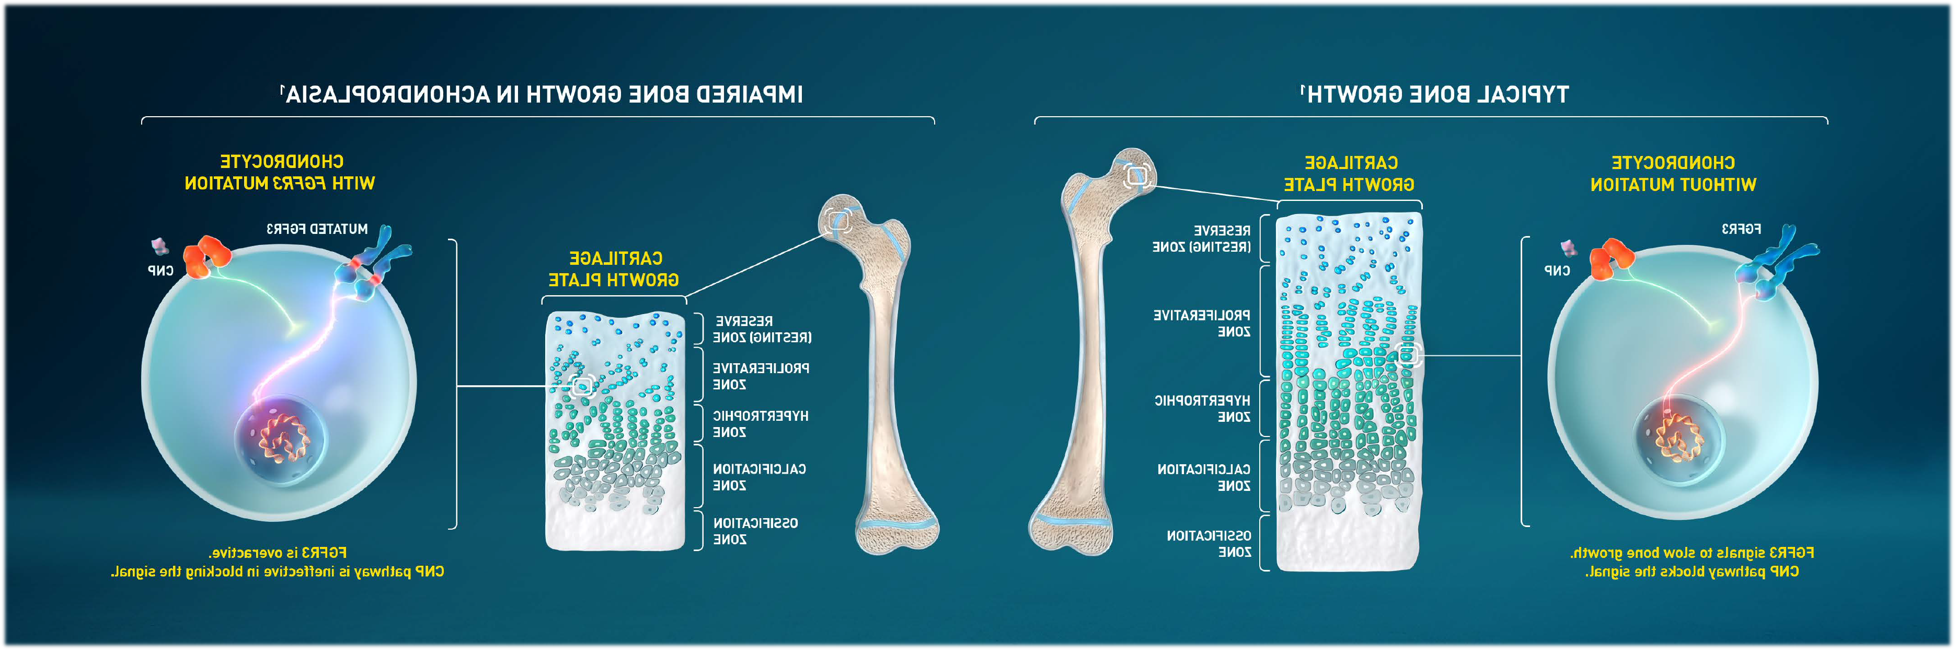 图片:正常骨生长vs. 软骨发育不全的骨骼生长